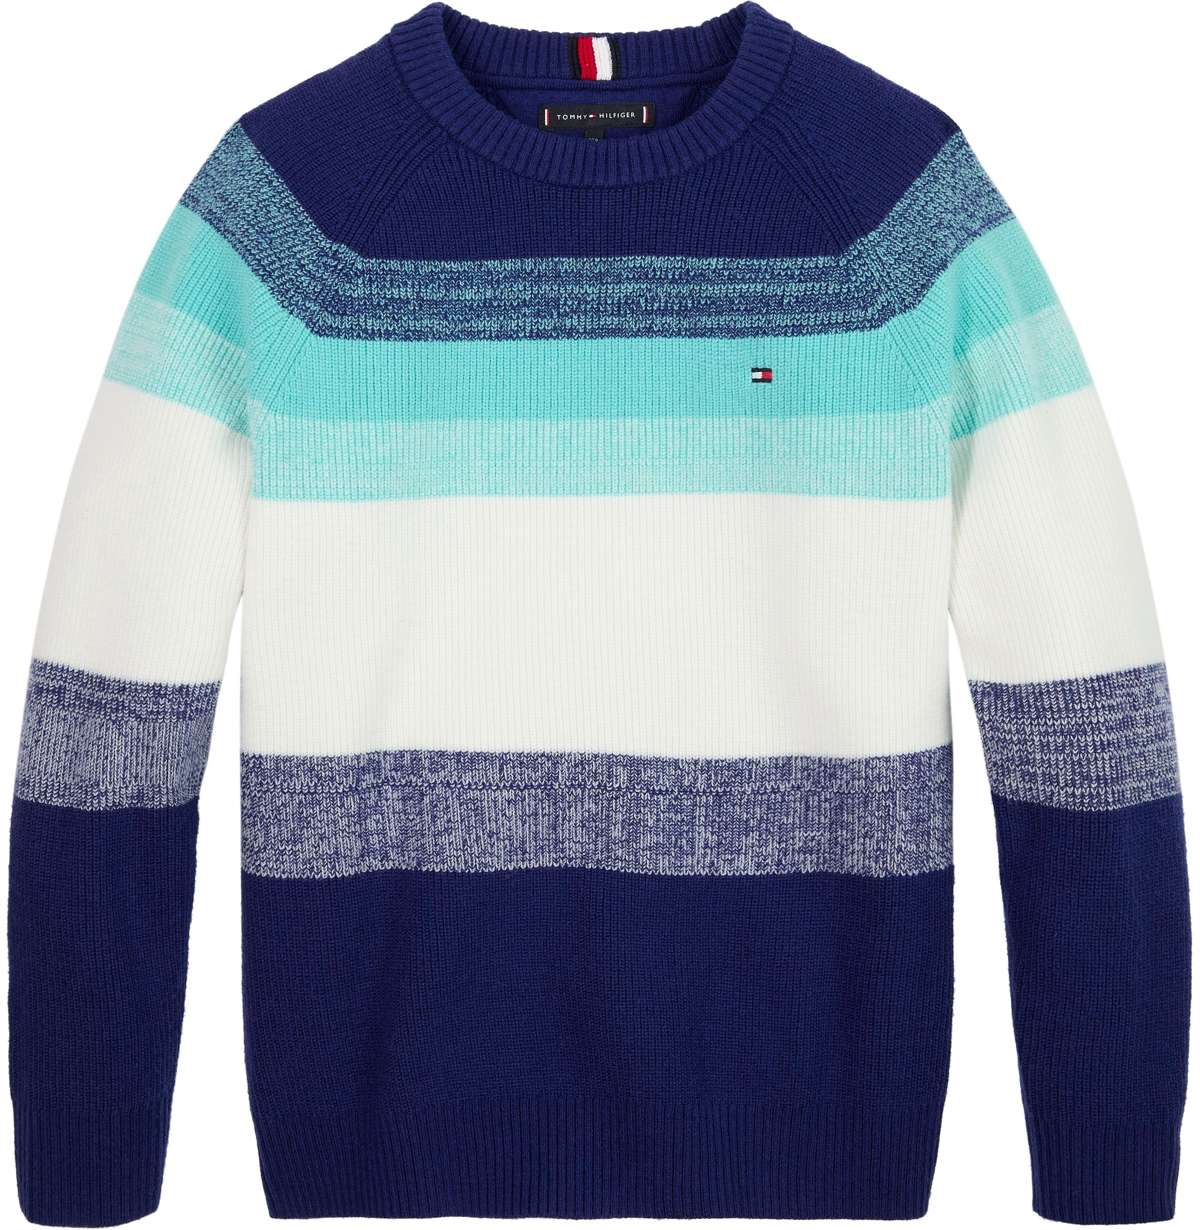 Вязаный свитер с полосатым узором в тон.